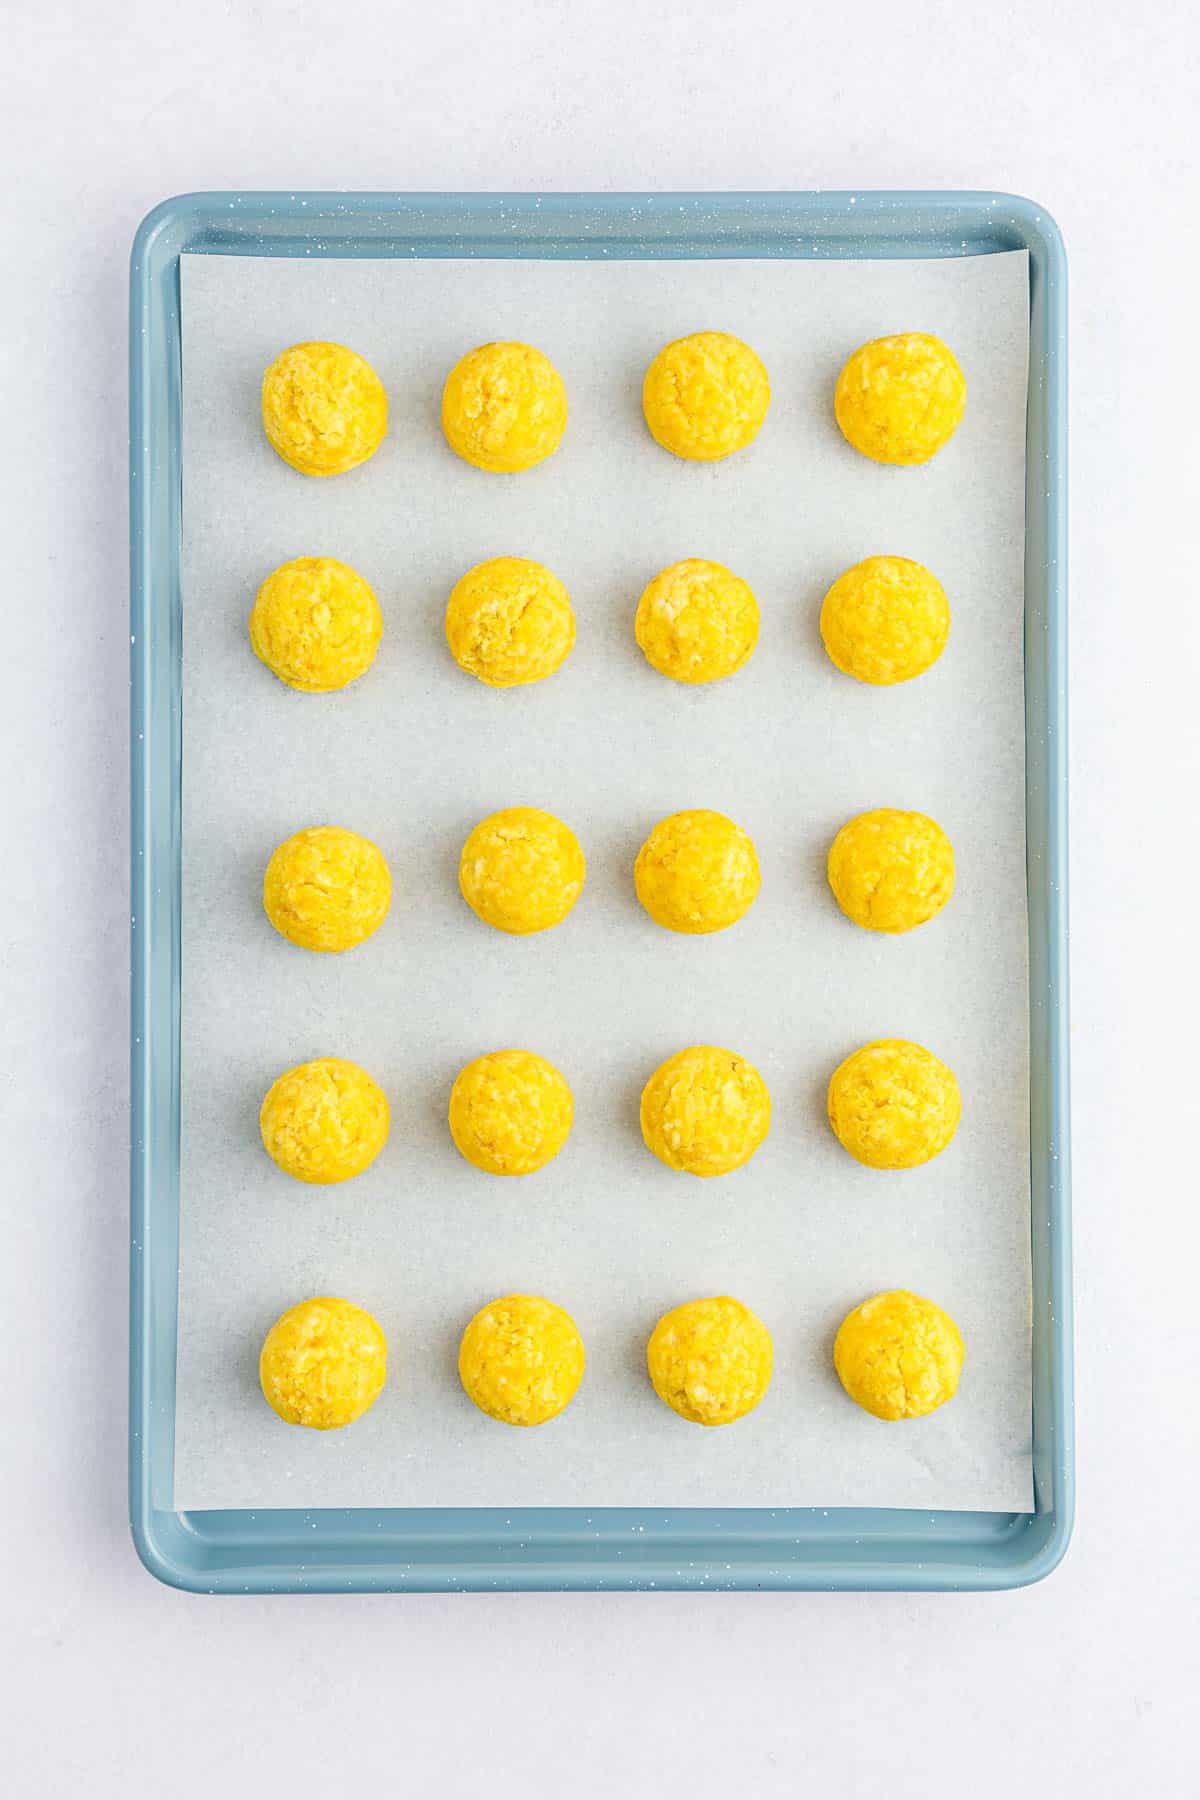 round yellow cake balls on baking sheet